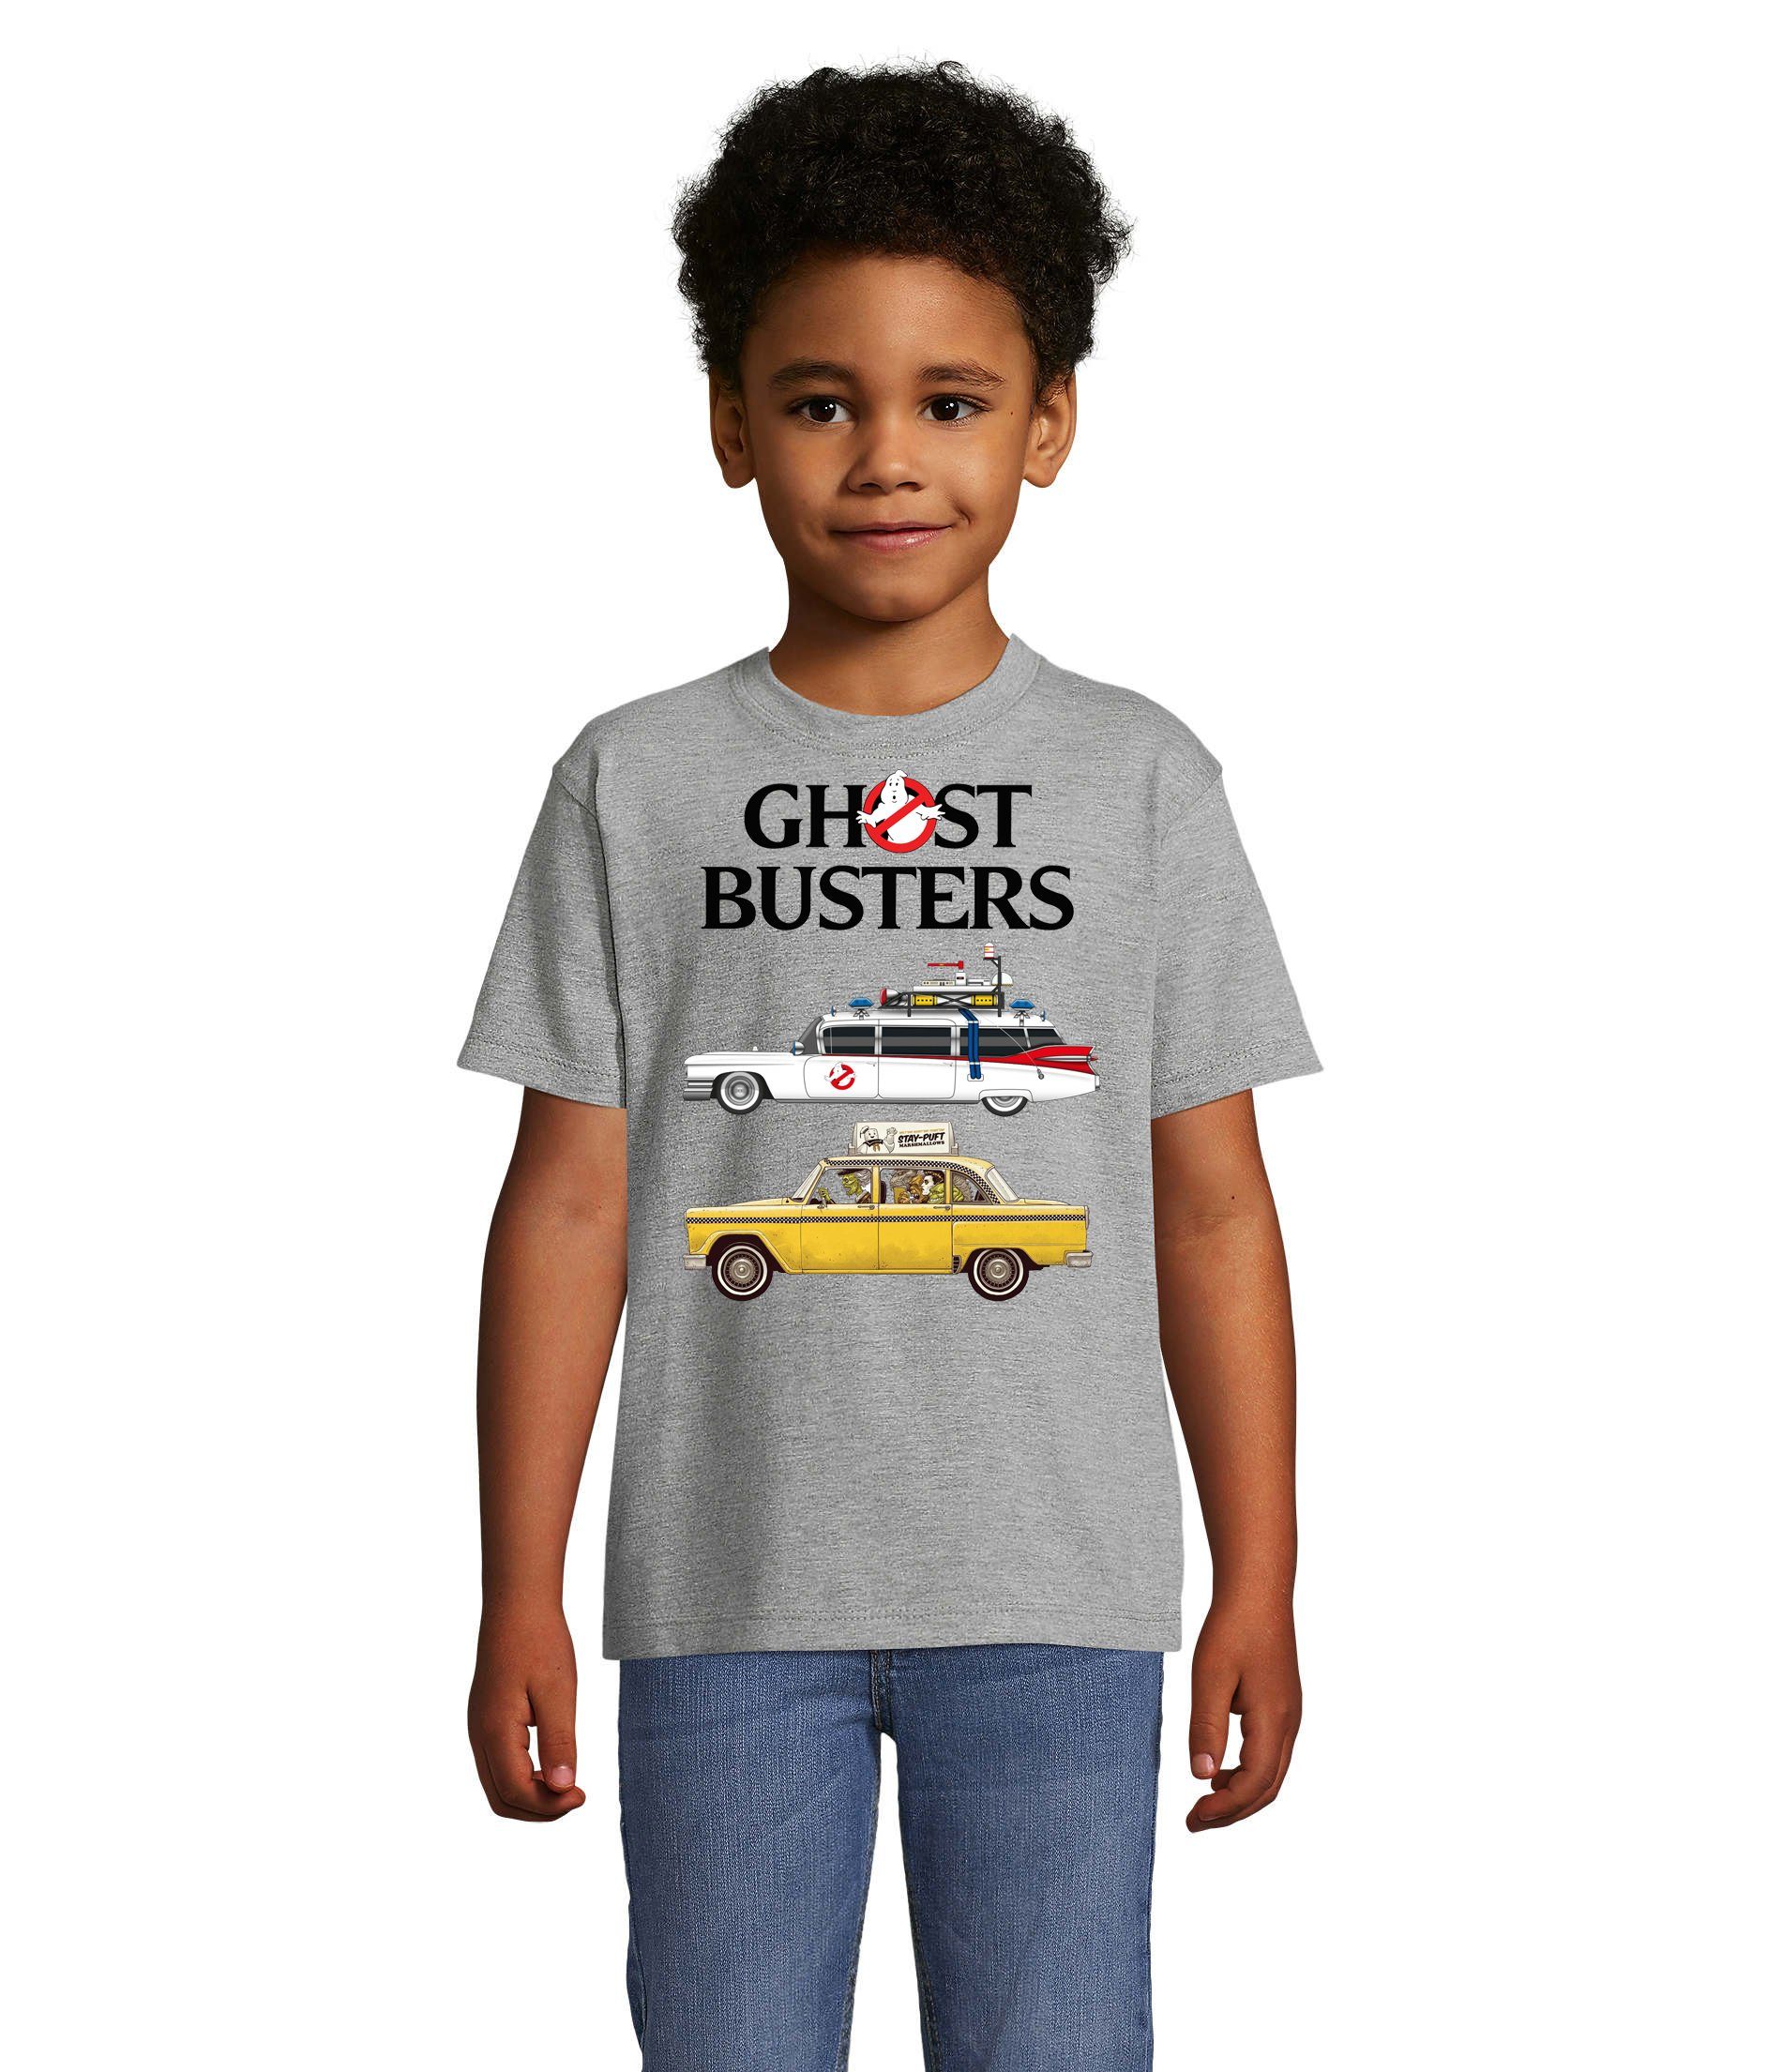 Blondie & Brownie T-Shirt Kinder Ghostbusters Cars Auto Geisterjäger Geister Film Ghost Grau